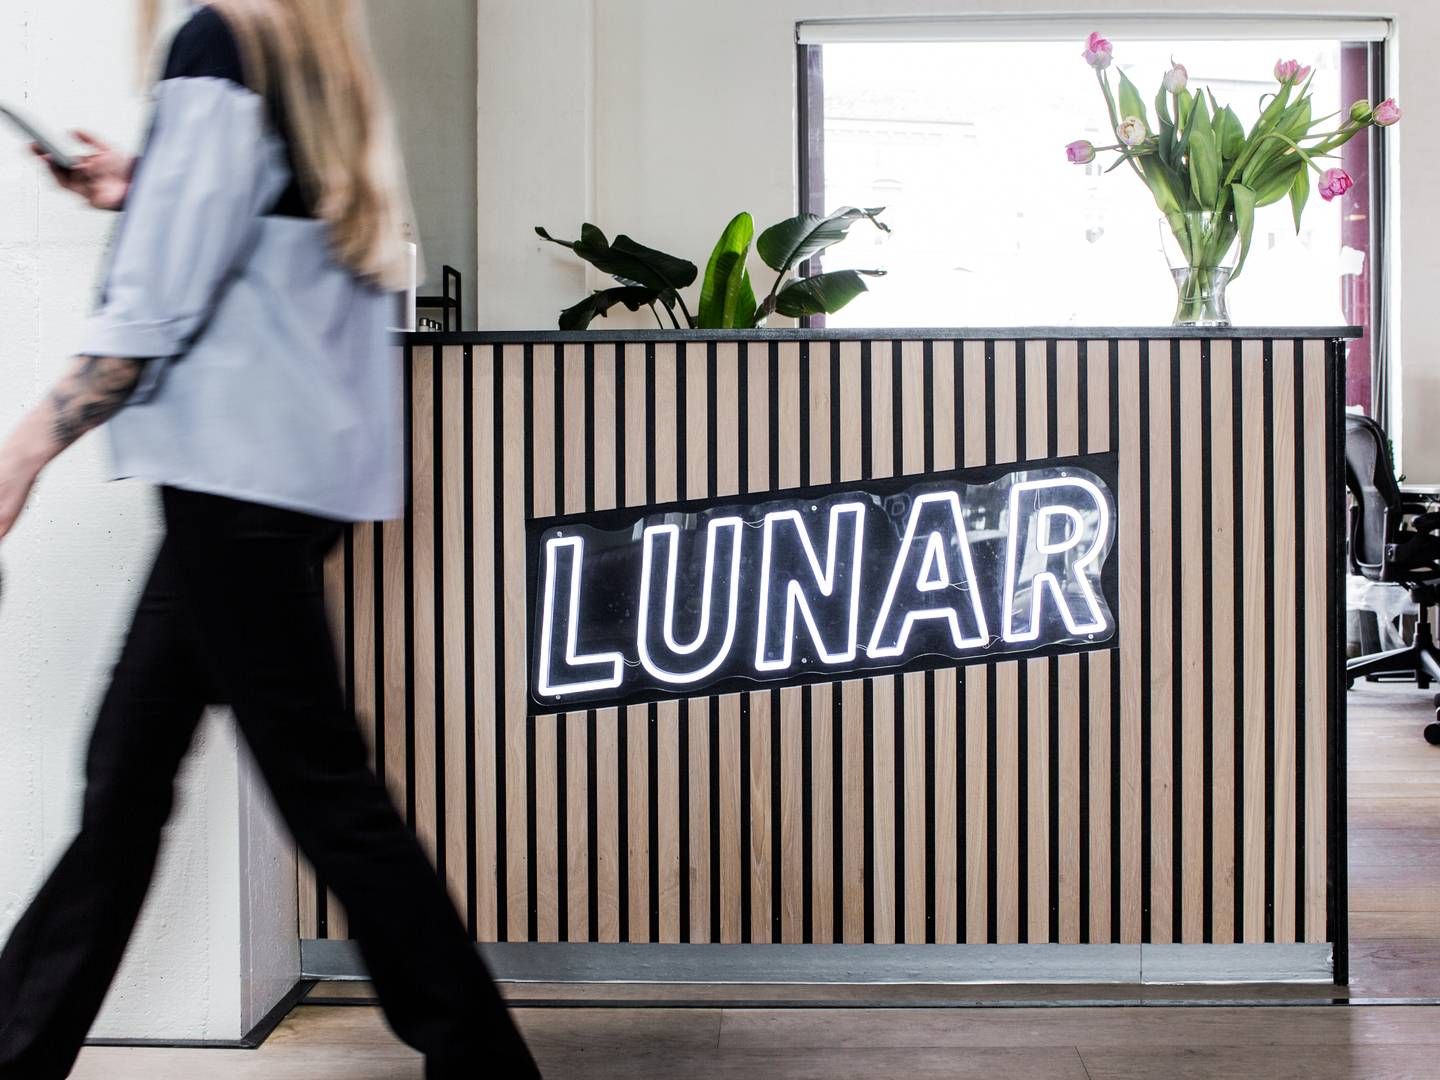 Lunar har fyret 40 ansatte. | Foto: PR/Lunar Bank